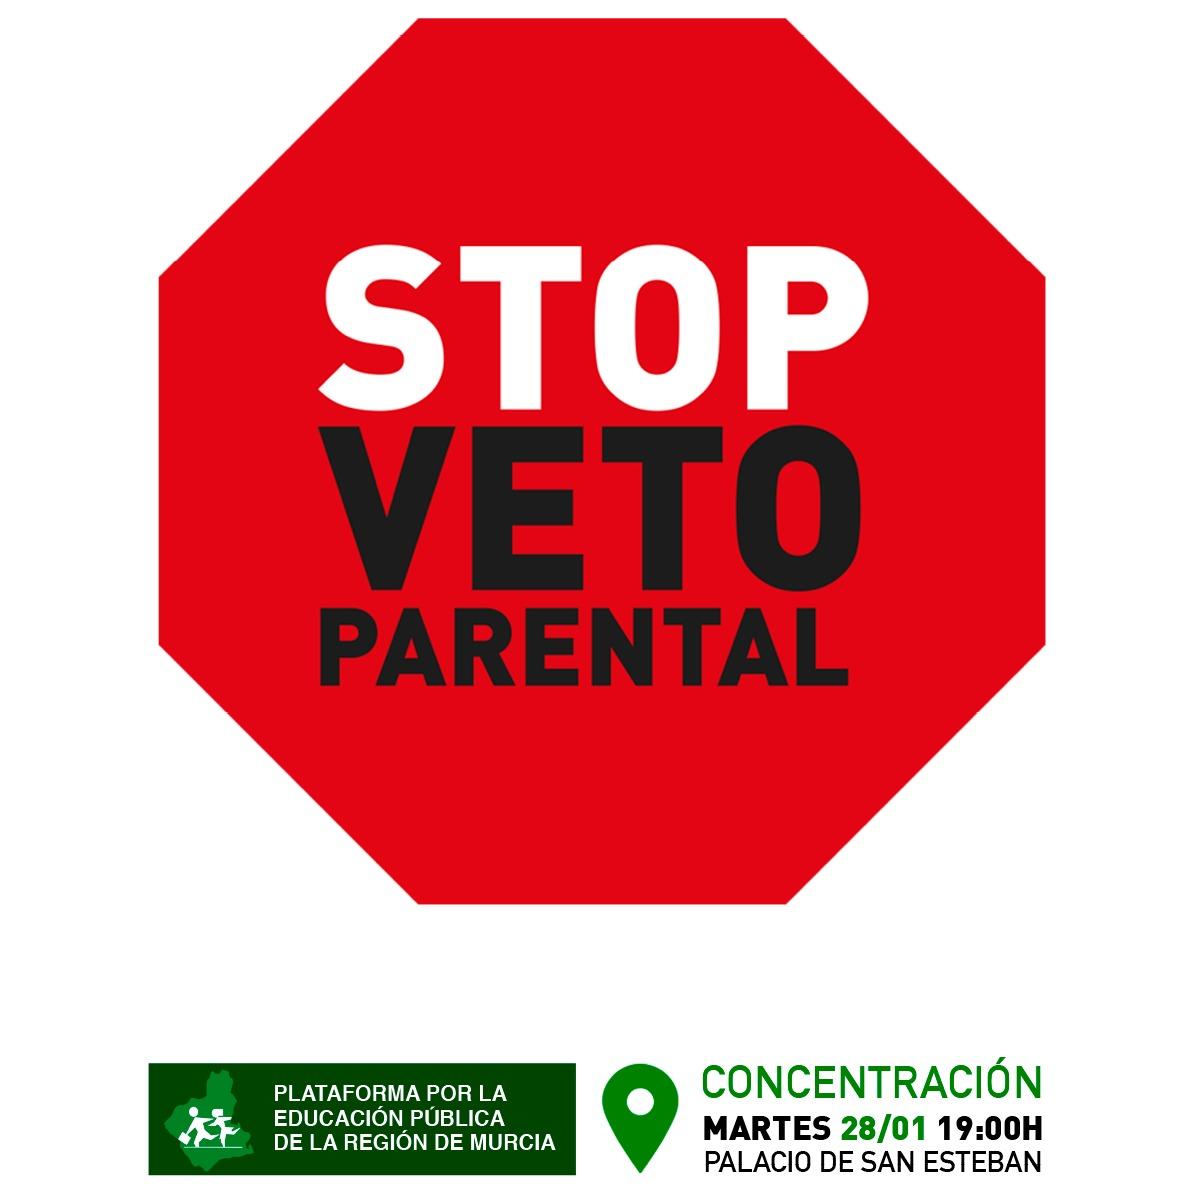 Concentracin contra el veto parental.